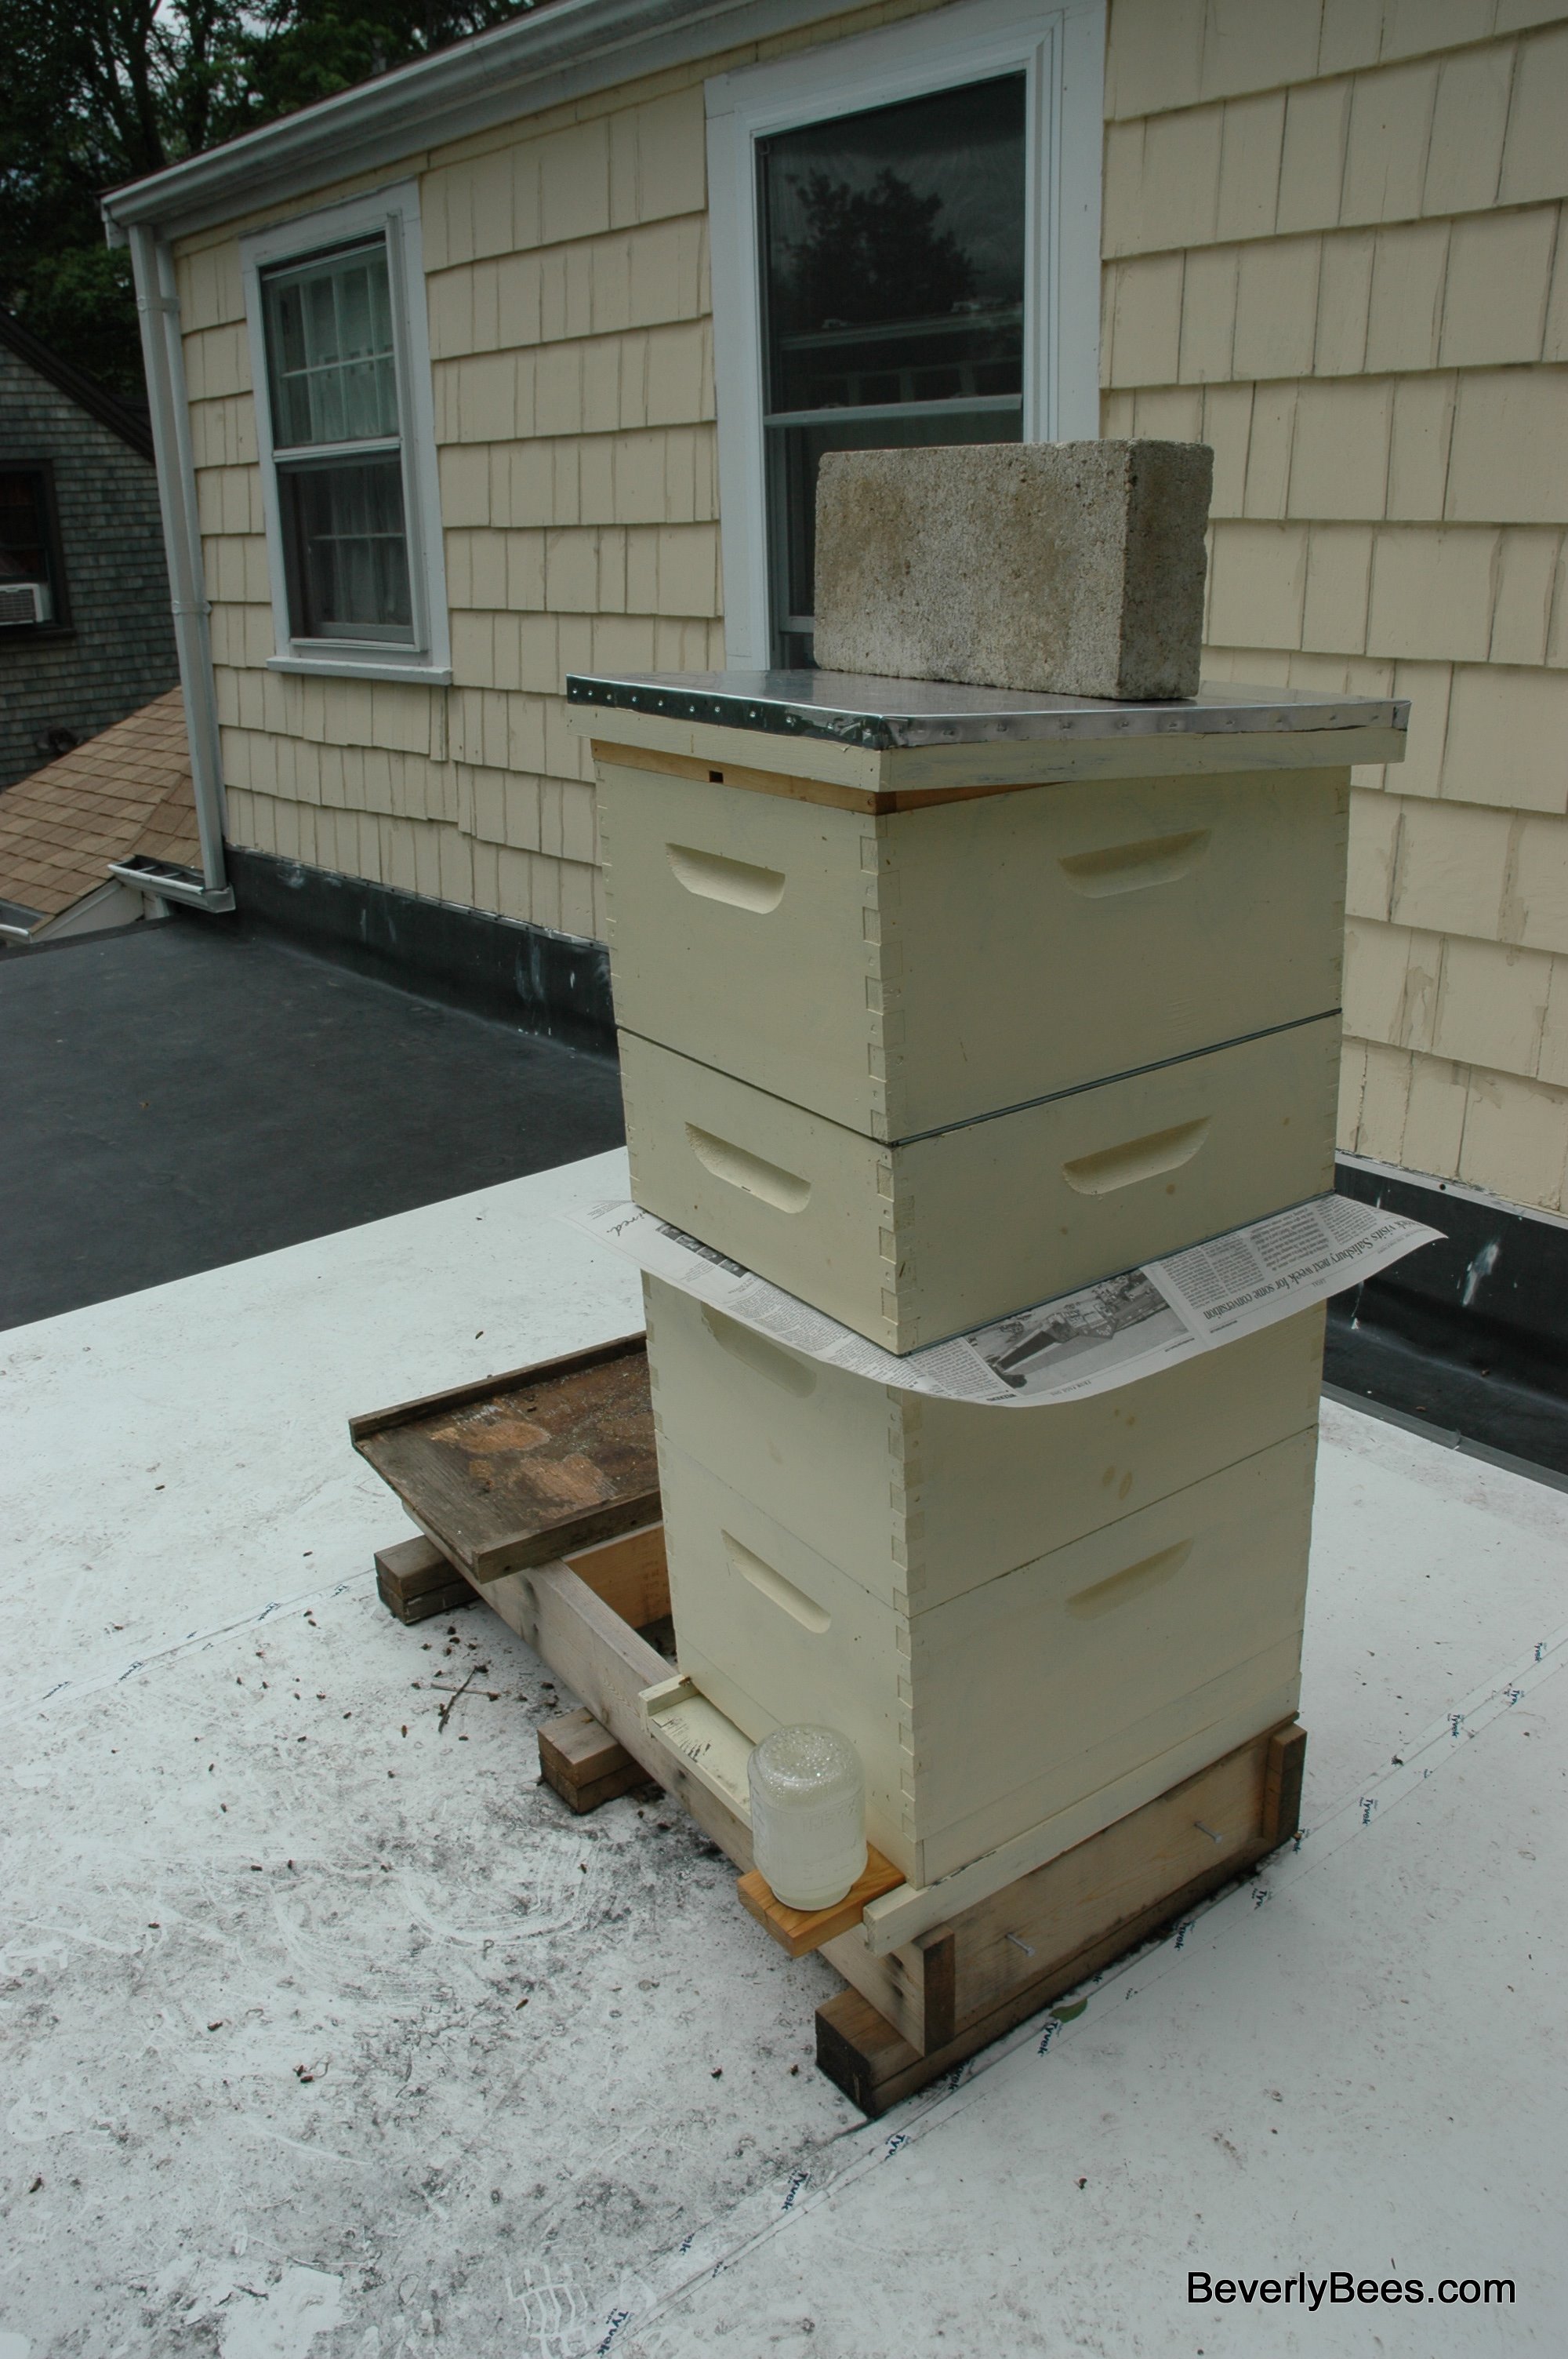 queen bee hive